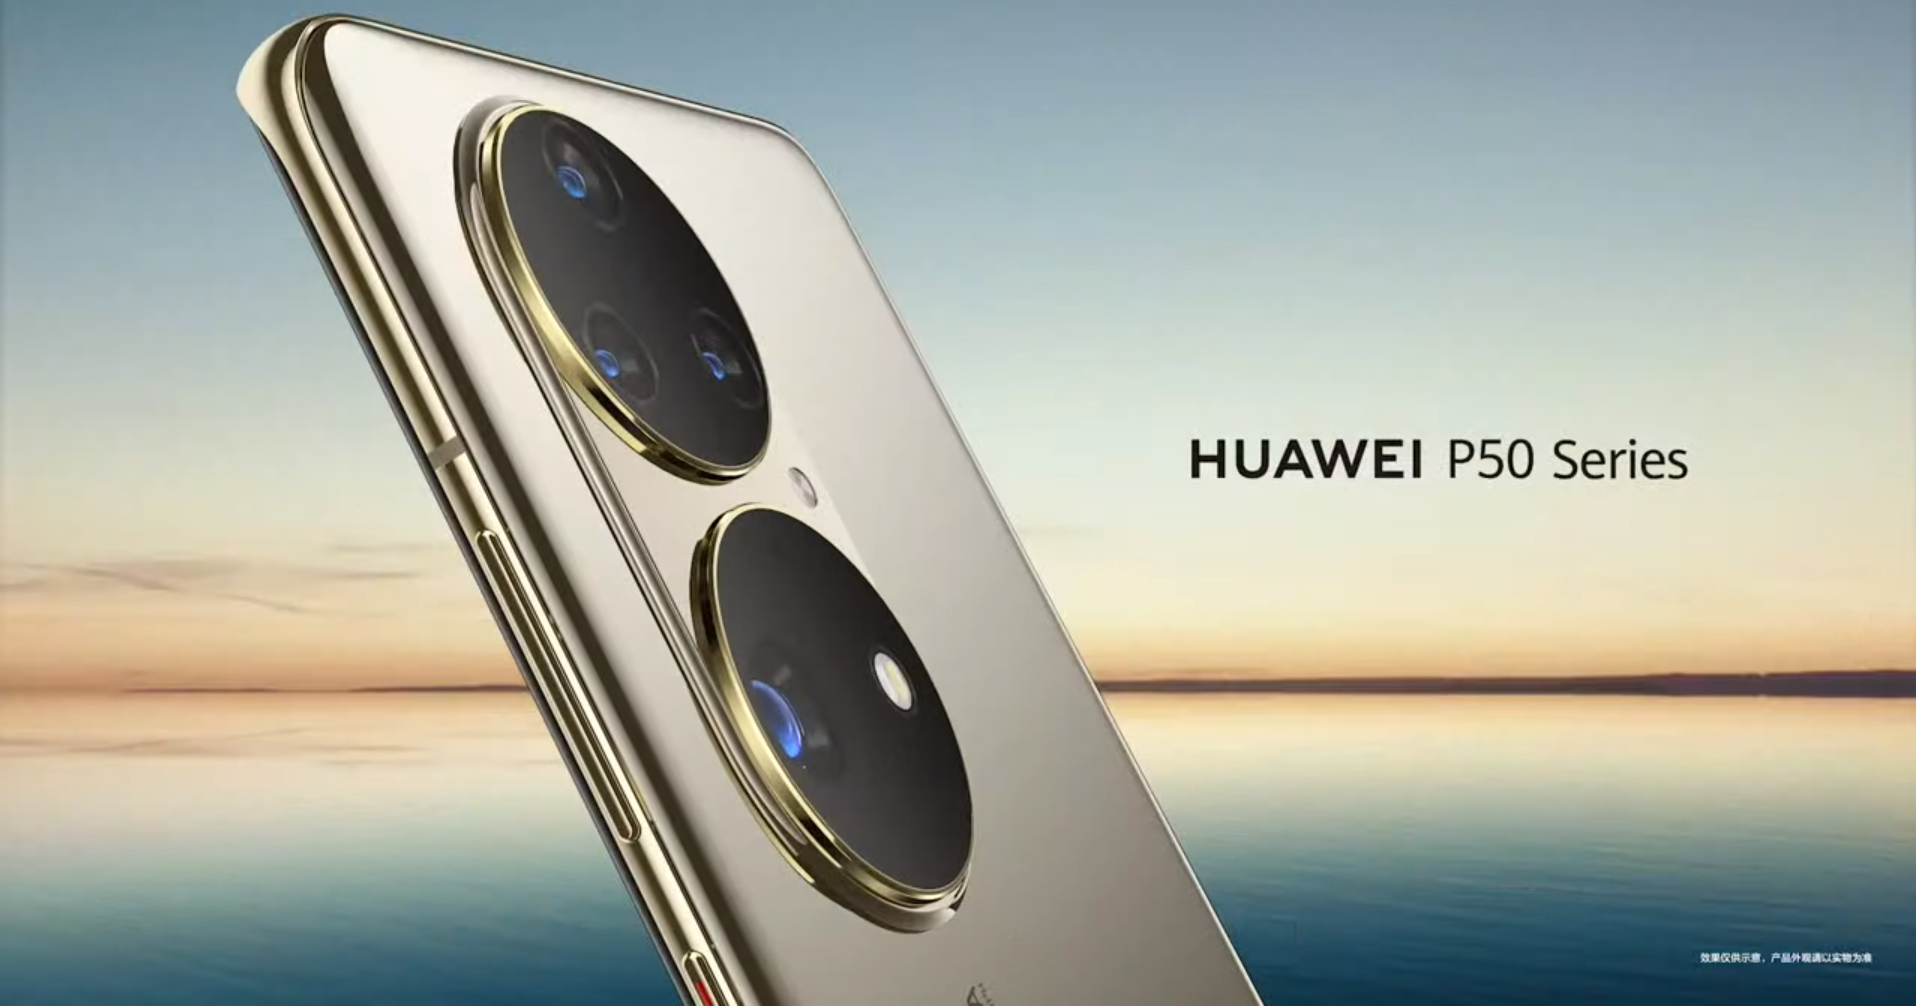 เราได้และเสียอะไรจากการที่ Huawei ถูกแบนไปบ้าง?